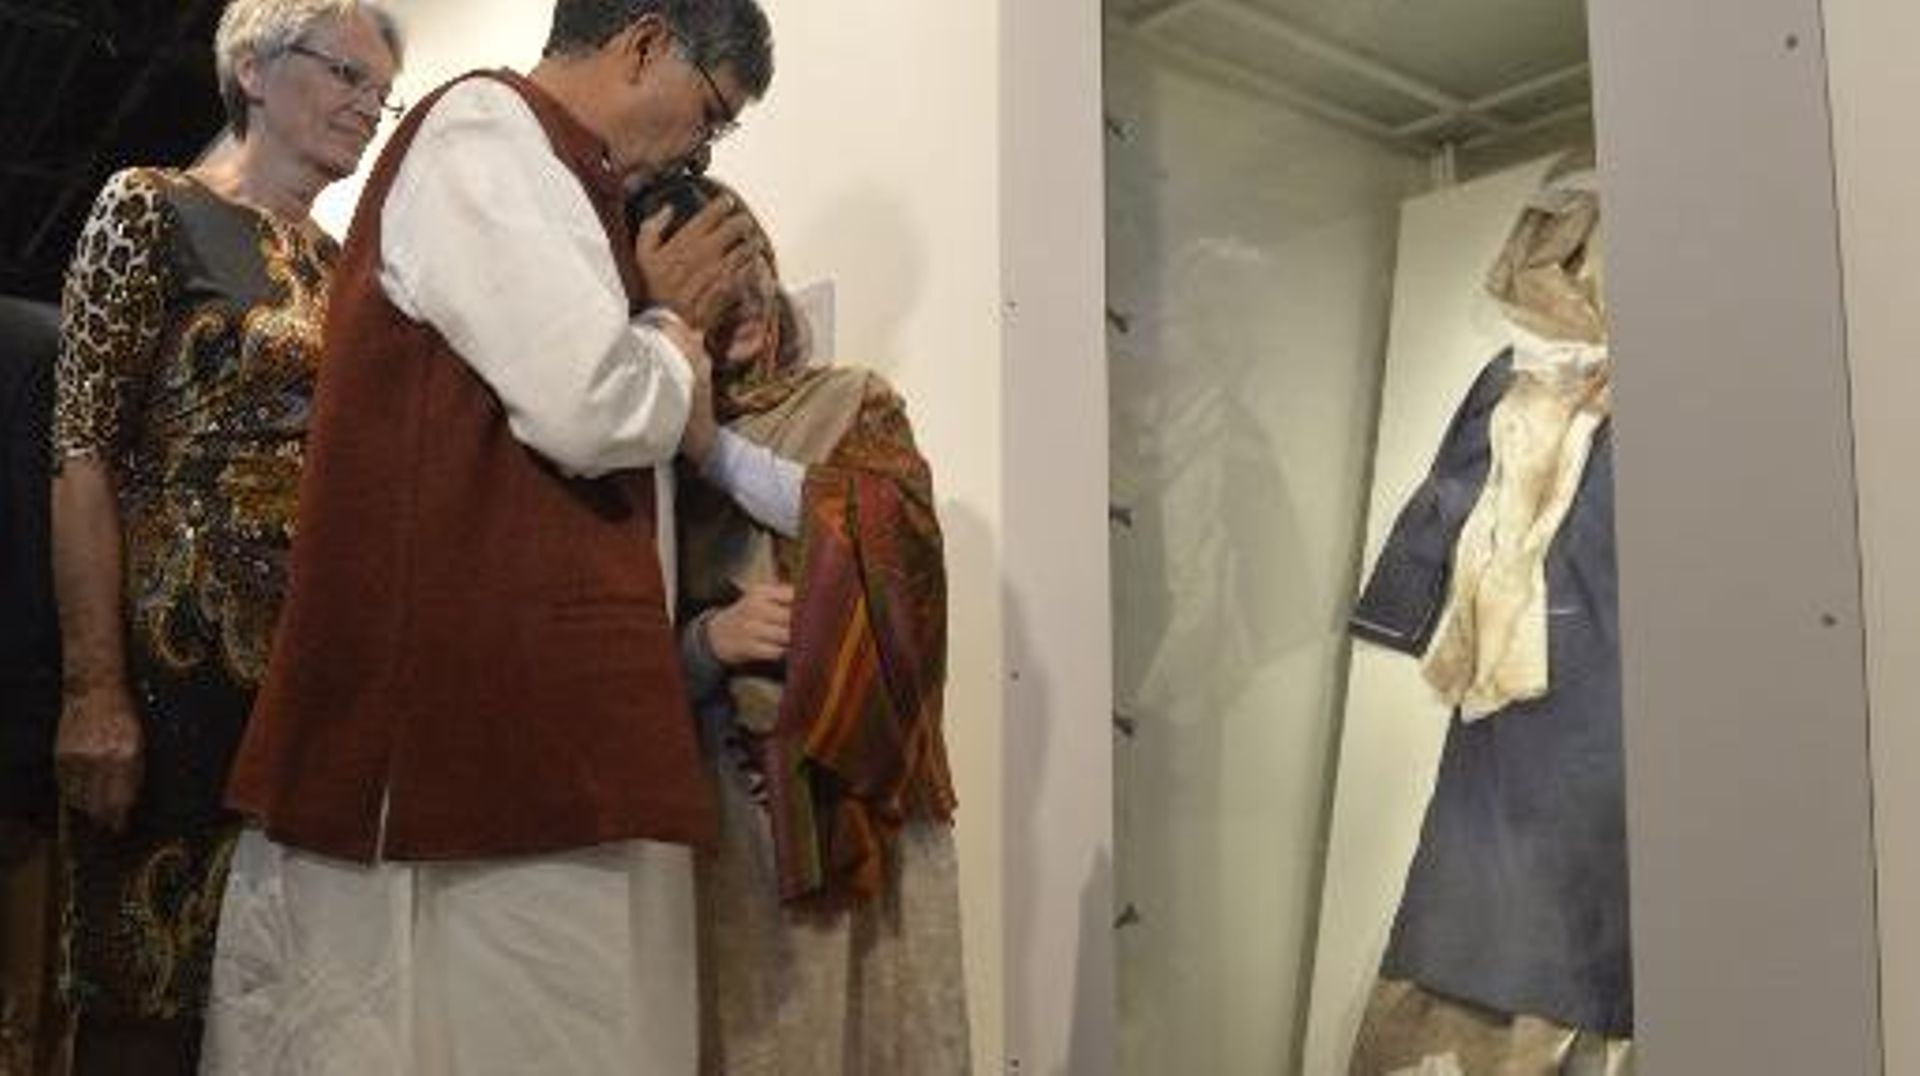 Kailash Satyarthi et Malala Yousafzai, prix Nobel de la paix, regardent l'uniforme de la jeune fille portant encore les stigmates de son agression, lors de l'inauguration de l'exposition au centre Nobal d'Oslo, le 11 décembre 2014